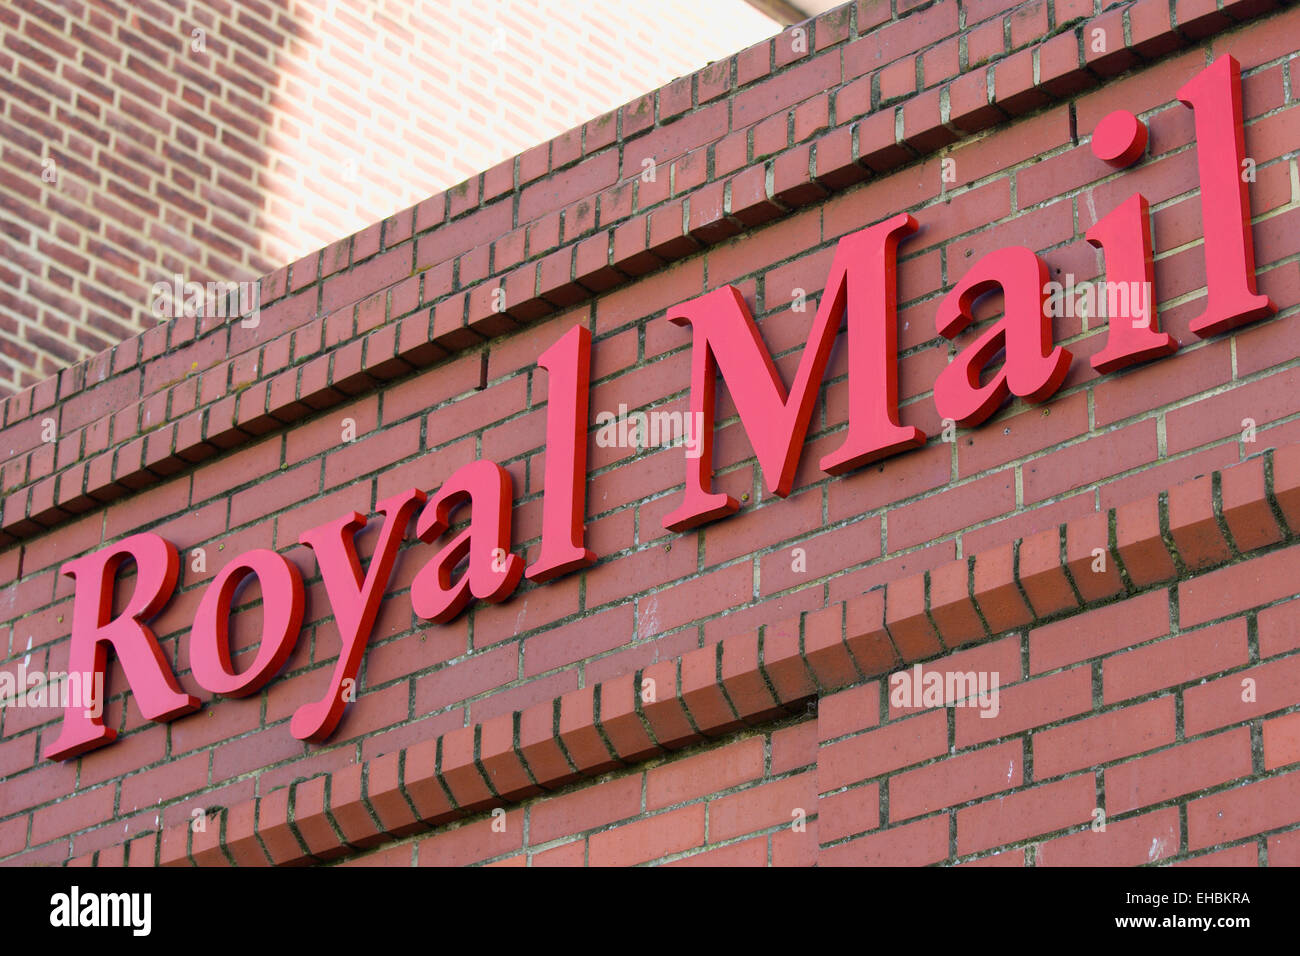 Les affaires, les communications, la Poste, Royal Mail signe sur un immeuble du bureau de poste. Banque D'Images